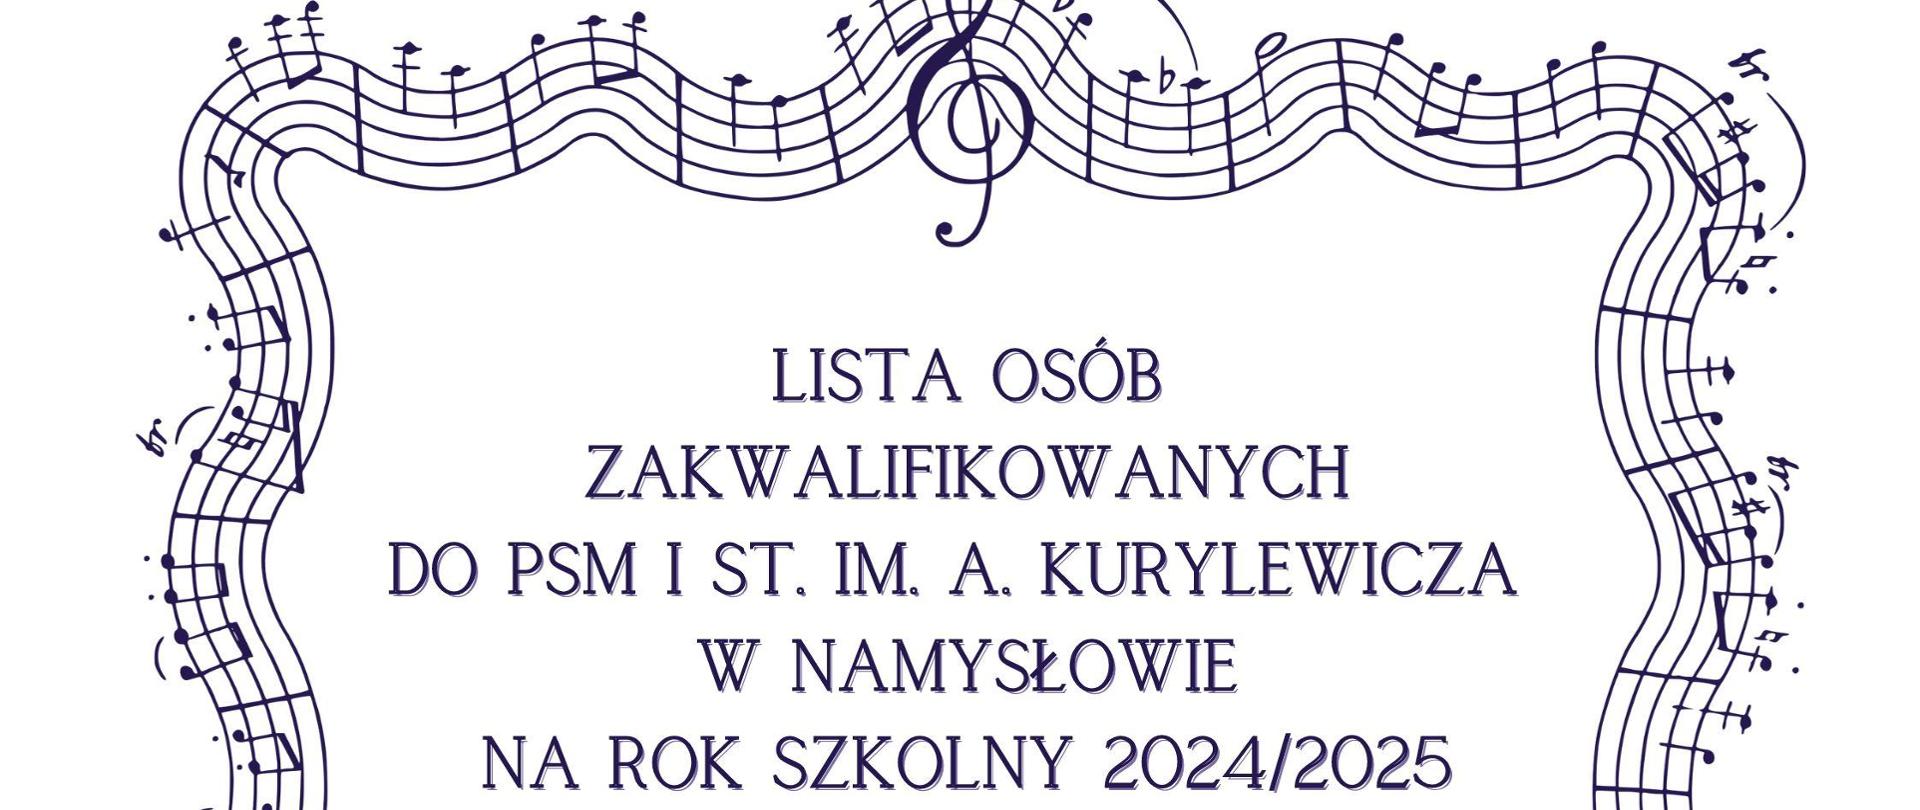 Plakat na białym tle z wpisem" Lista osób zakwalifikowanych do PSM I st. im. Andrzeja Kurylewicza w Namysłowie w roku szkolnym 2024/2025" otoczonym ramką z nutkami.